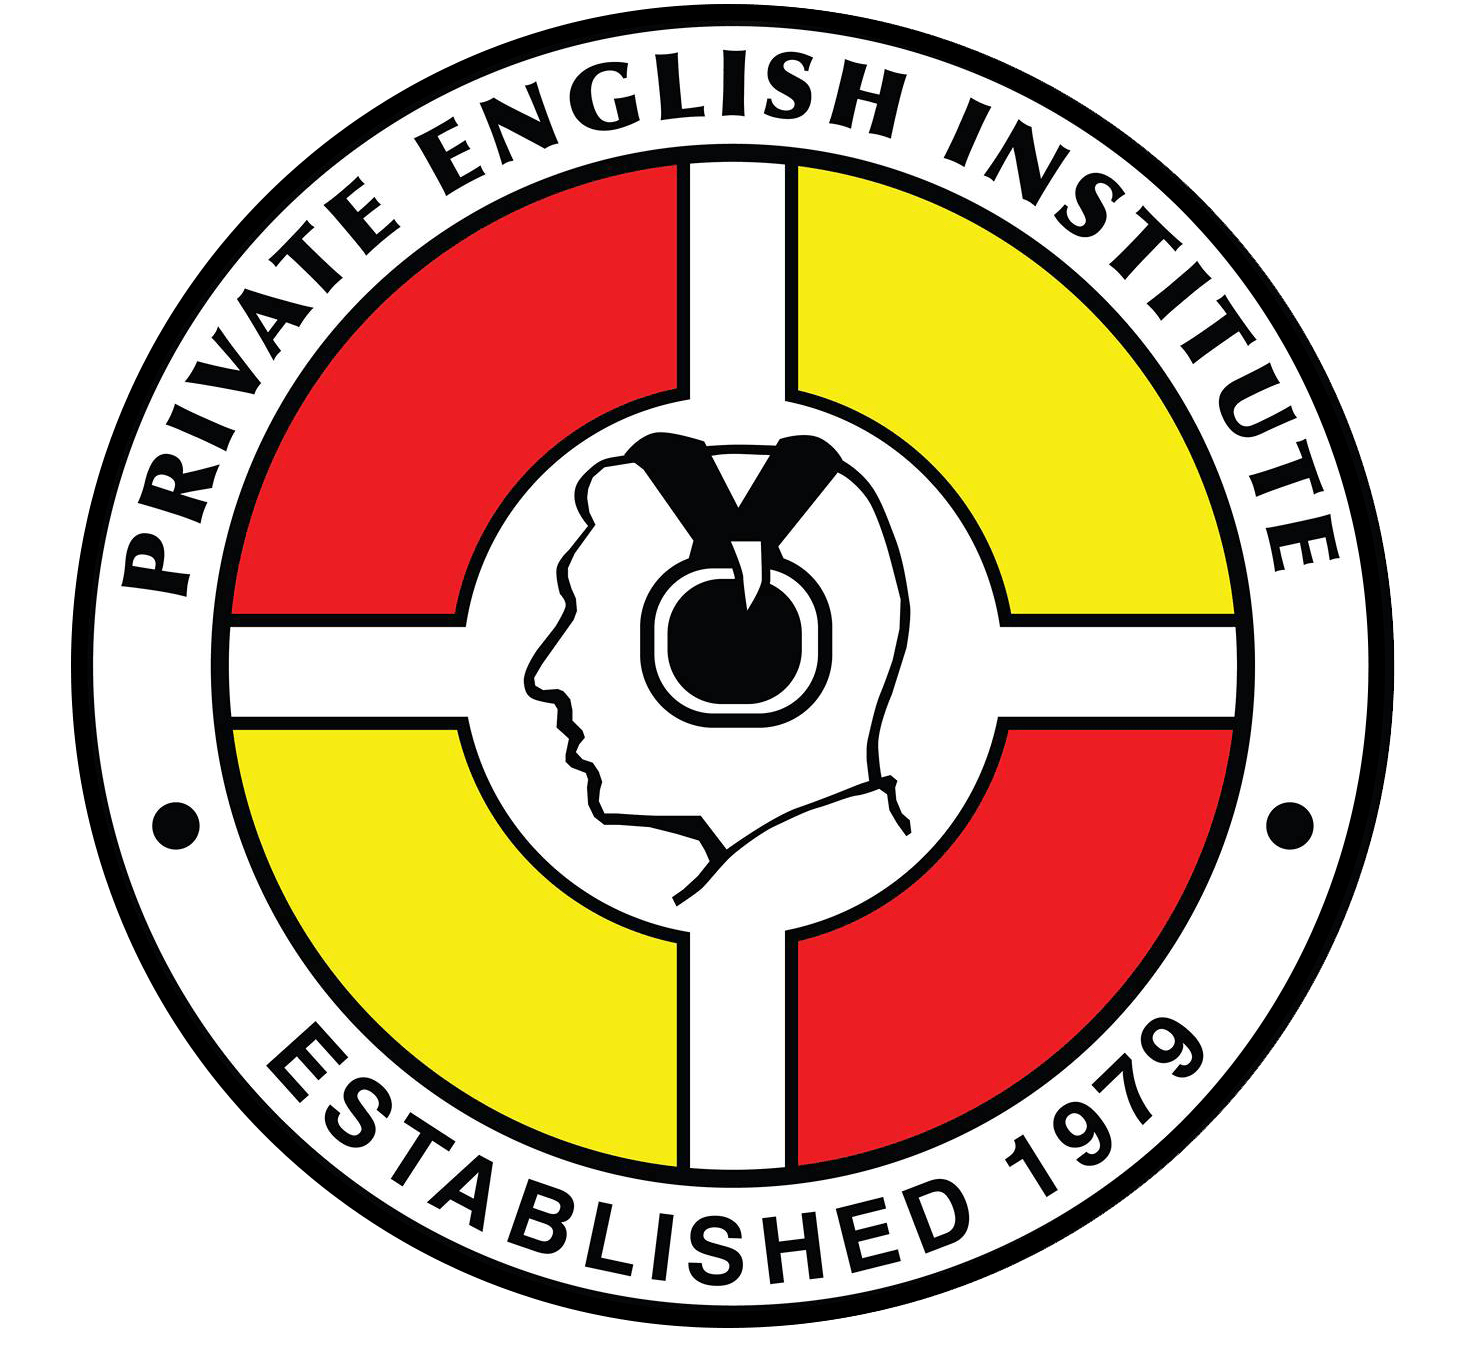 The Private English Institute